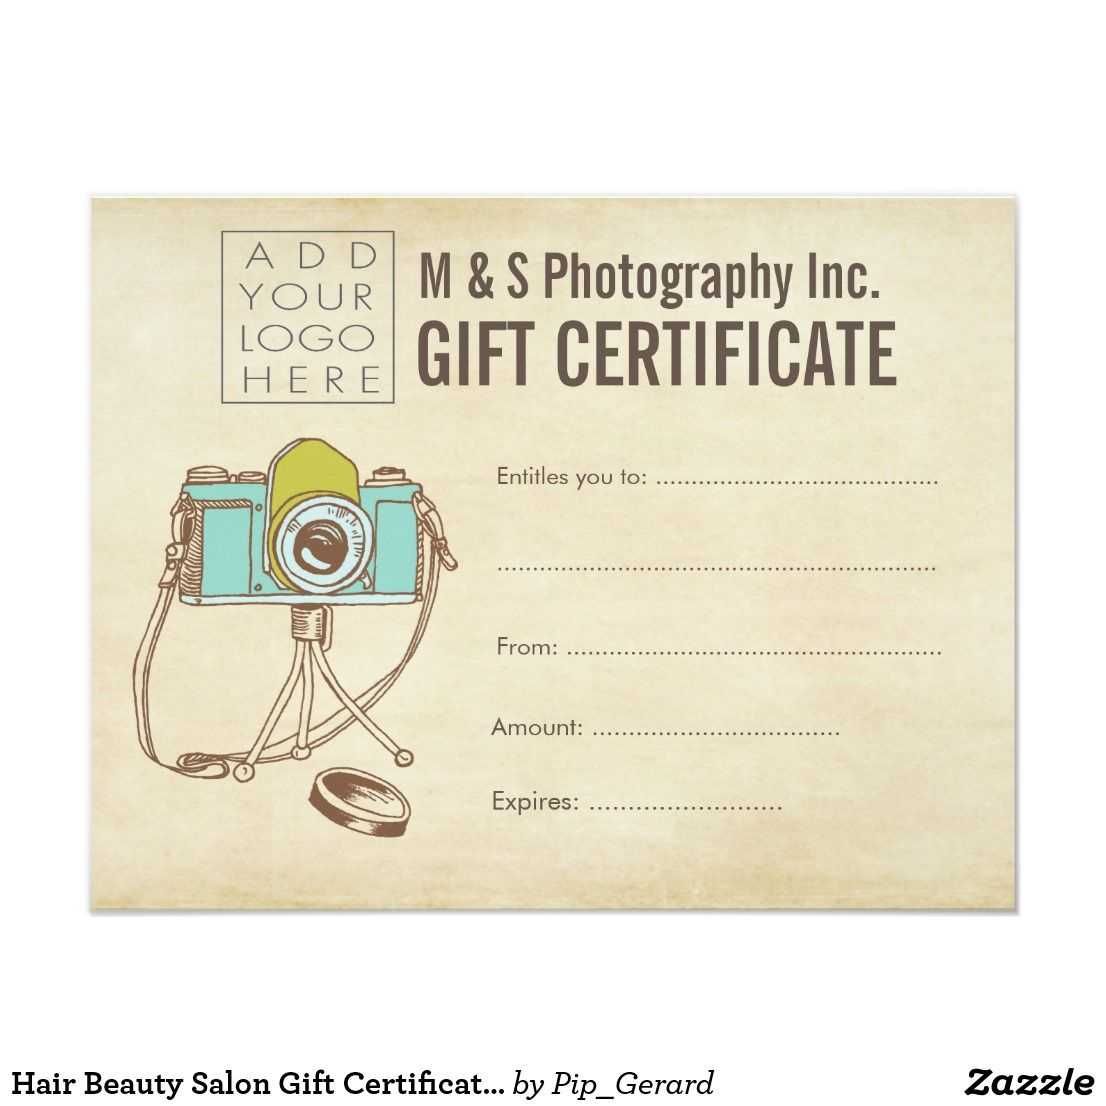 Hair Beauty Salon Gift Certificate Template | Zazzle With Regard To Salon Gift Certificate Template